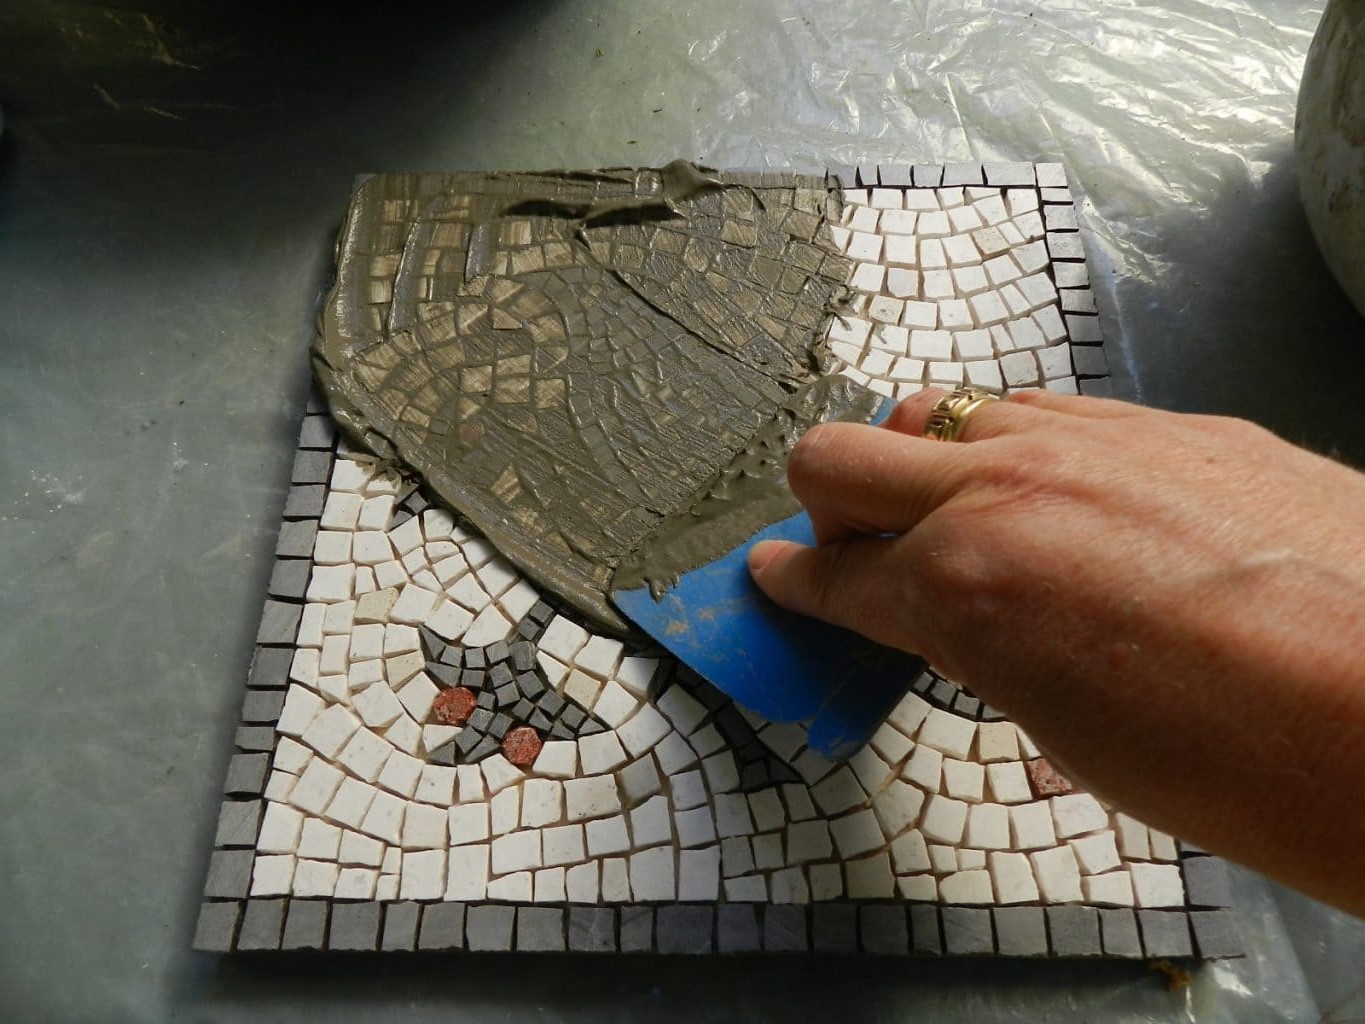 Укладка мозаики: как делают и как класть на стену мозаичную плитку, порядок монтажа и мастер-класс по изготовлению мозаики своими руками